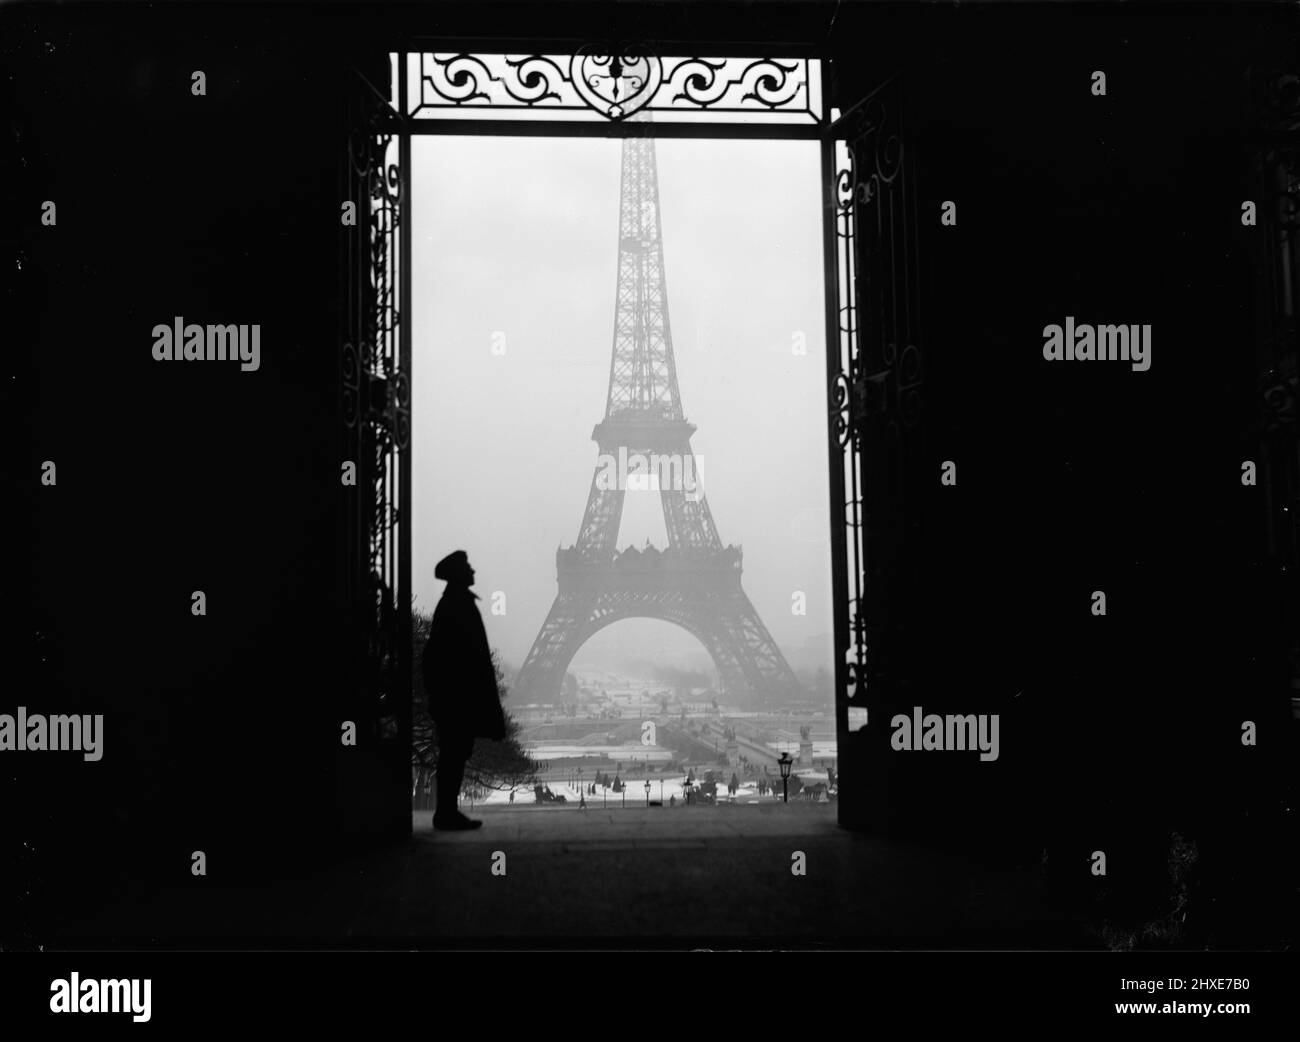 Vintage 1919 photo noir et blanc de la tour Eiffel encadrée par une porte avec une personne debout, Paris, France Banque D'Images